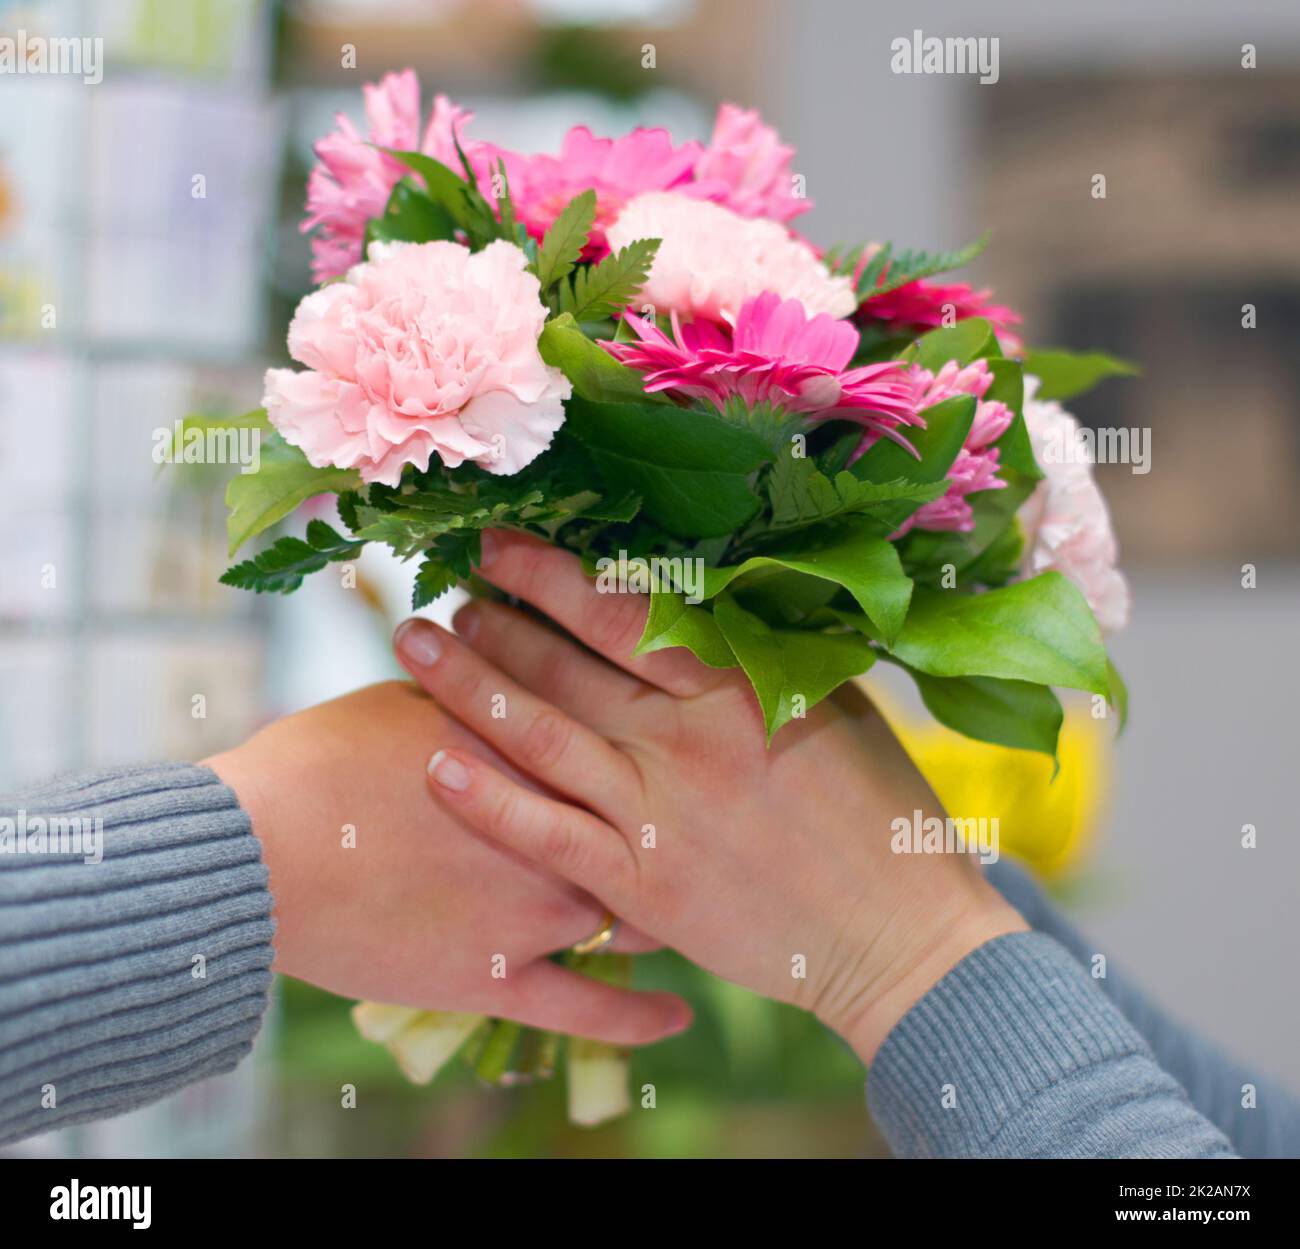 Vielen Dank. Zugeschnittene Aufnahme eines Blumenstrausses, der jemandem ausgehändigt wird. Stockfoto